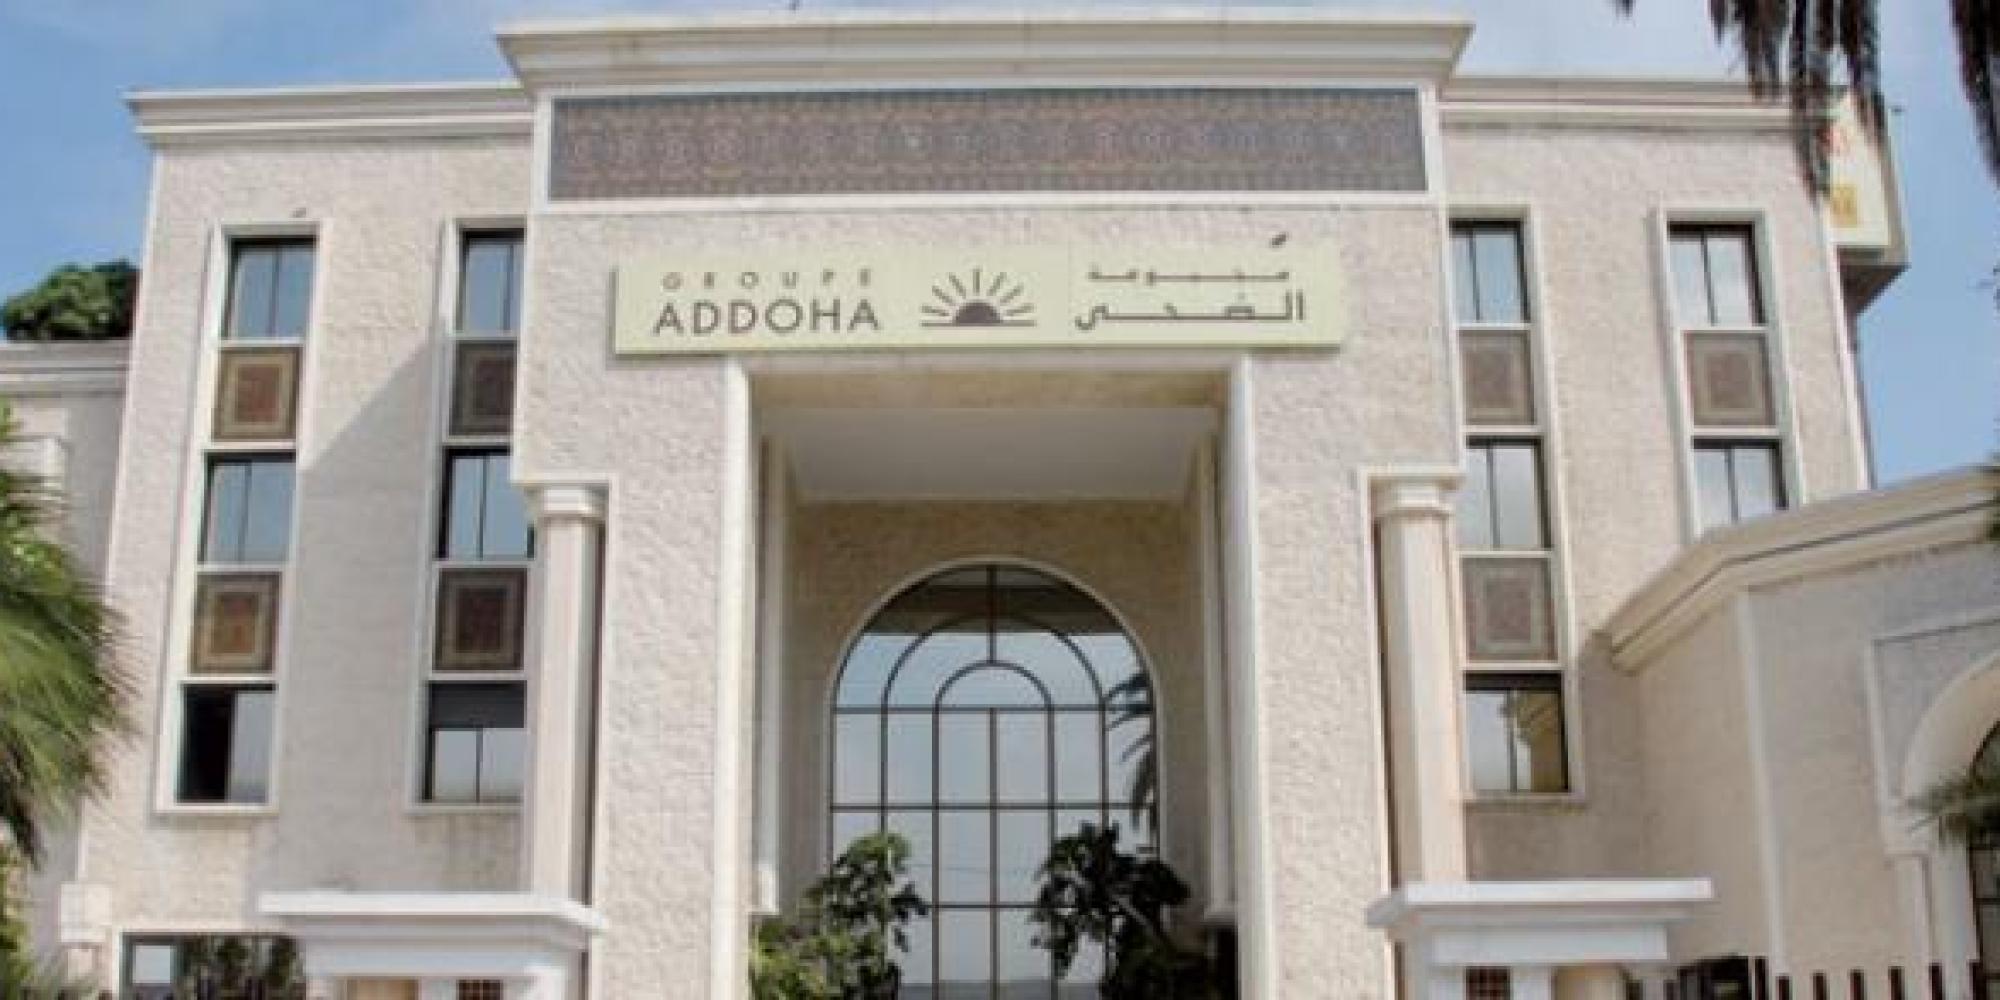 Addoha: chiffre d'affaires en progression de 31% au premier trimestre 2022